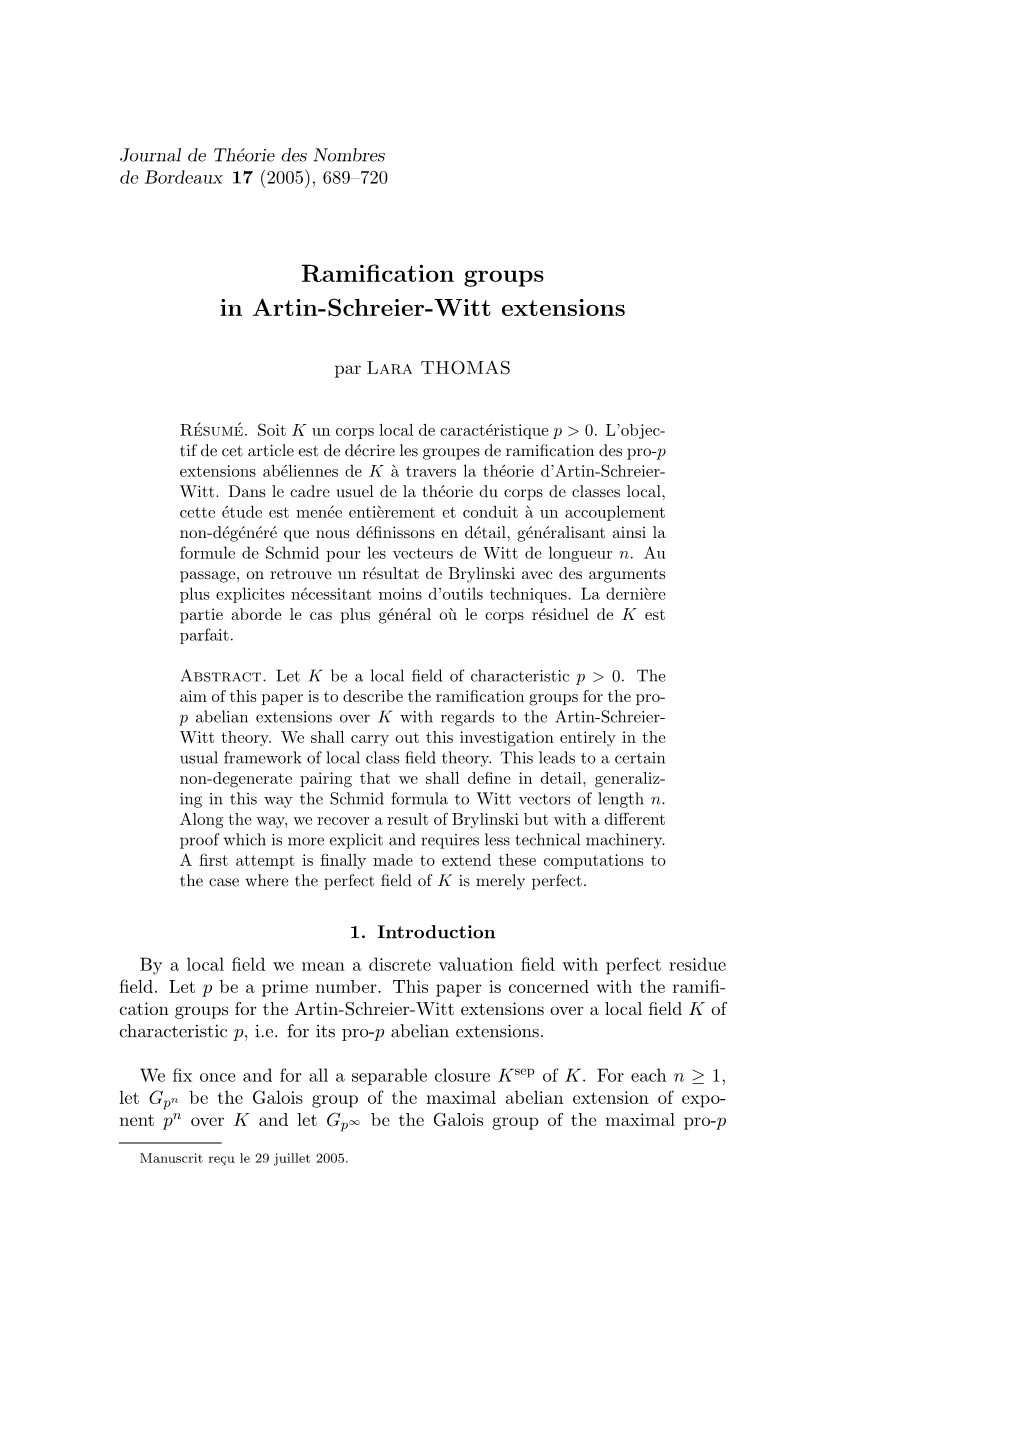 Ramification Groups in Artin-Schreier-Witt Extensions